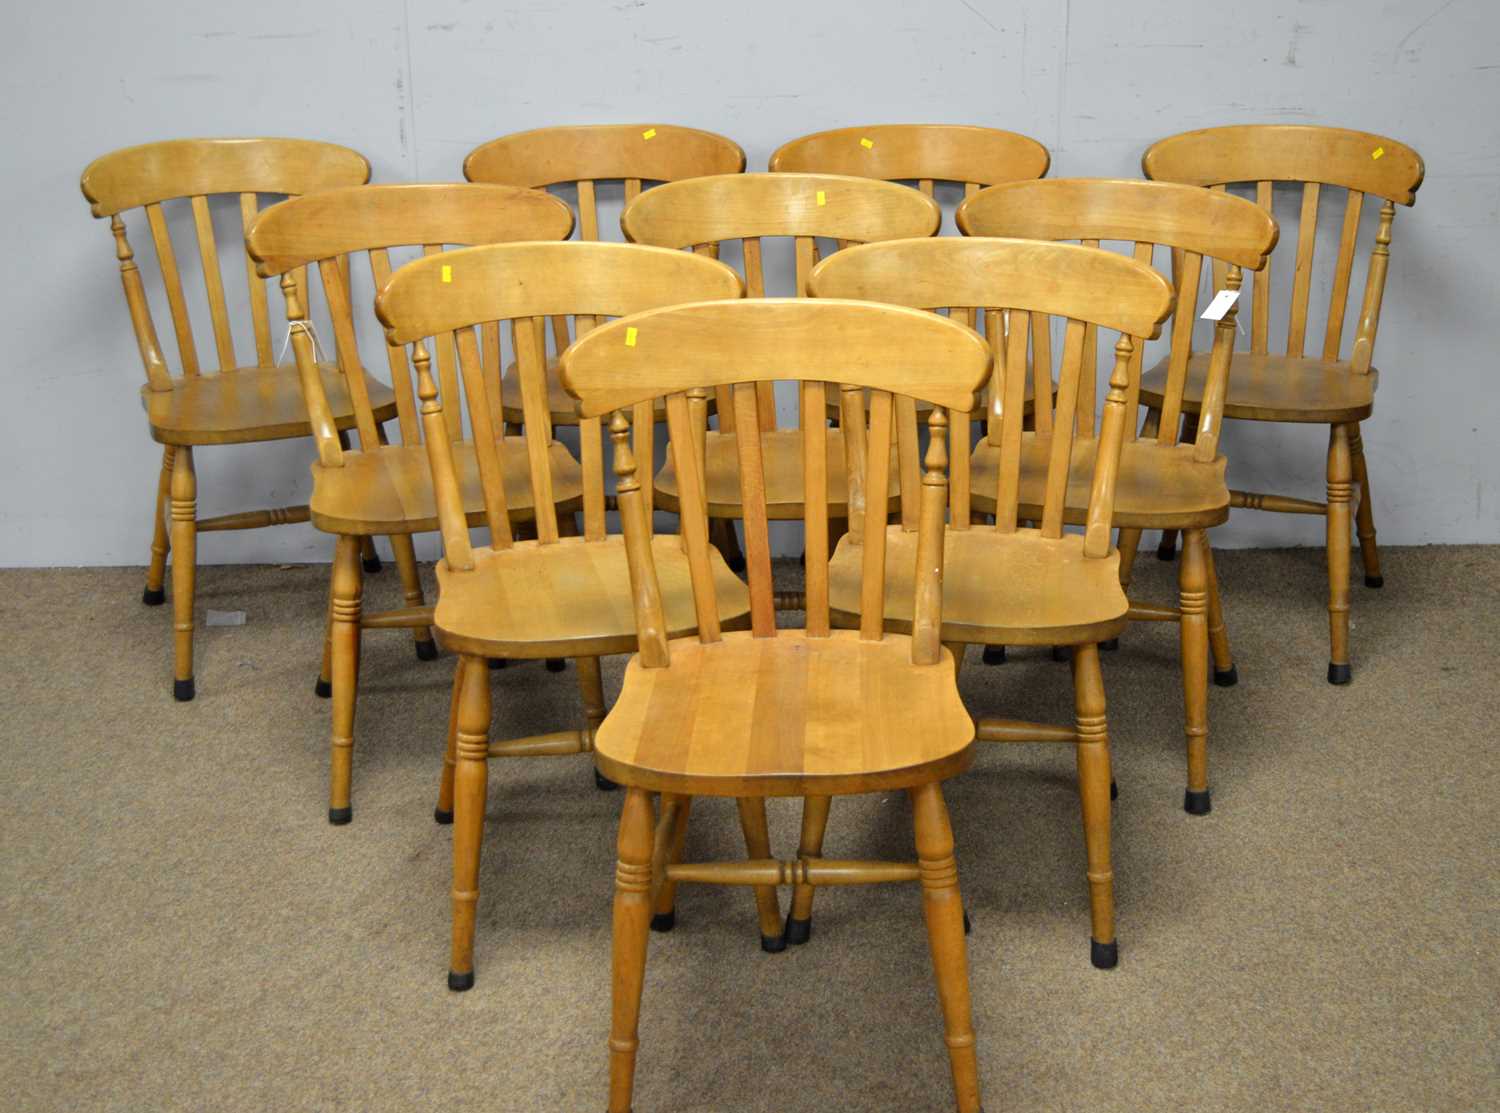 Ten Victorian-style beechwood kitchen chairs.